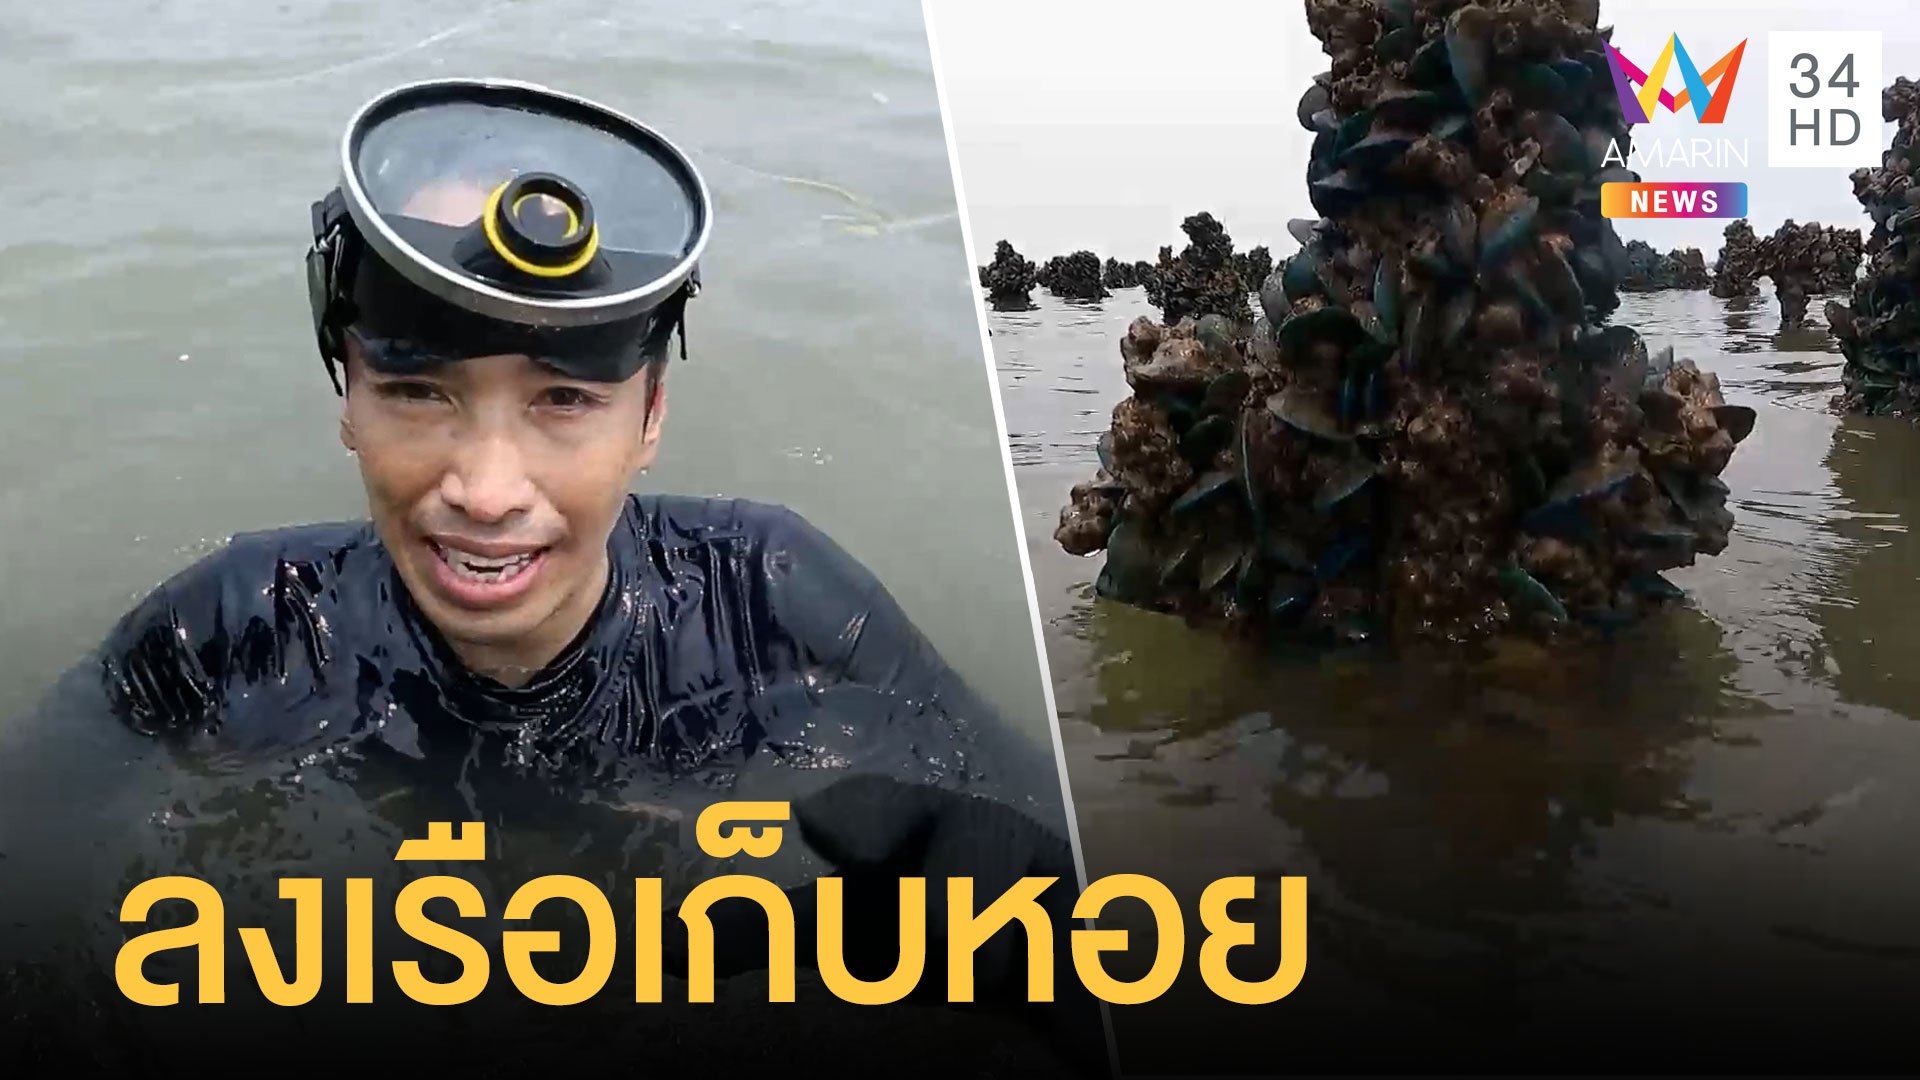 ลงเรือหาหอยแมลงภู่ ส่งตรงจากทะเลสมุทรสาคร  | ข่าวเที่ยงอมรินทร์ | 5 พ.ค. 65 | AMARIN TVHD34